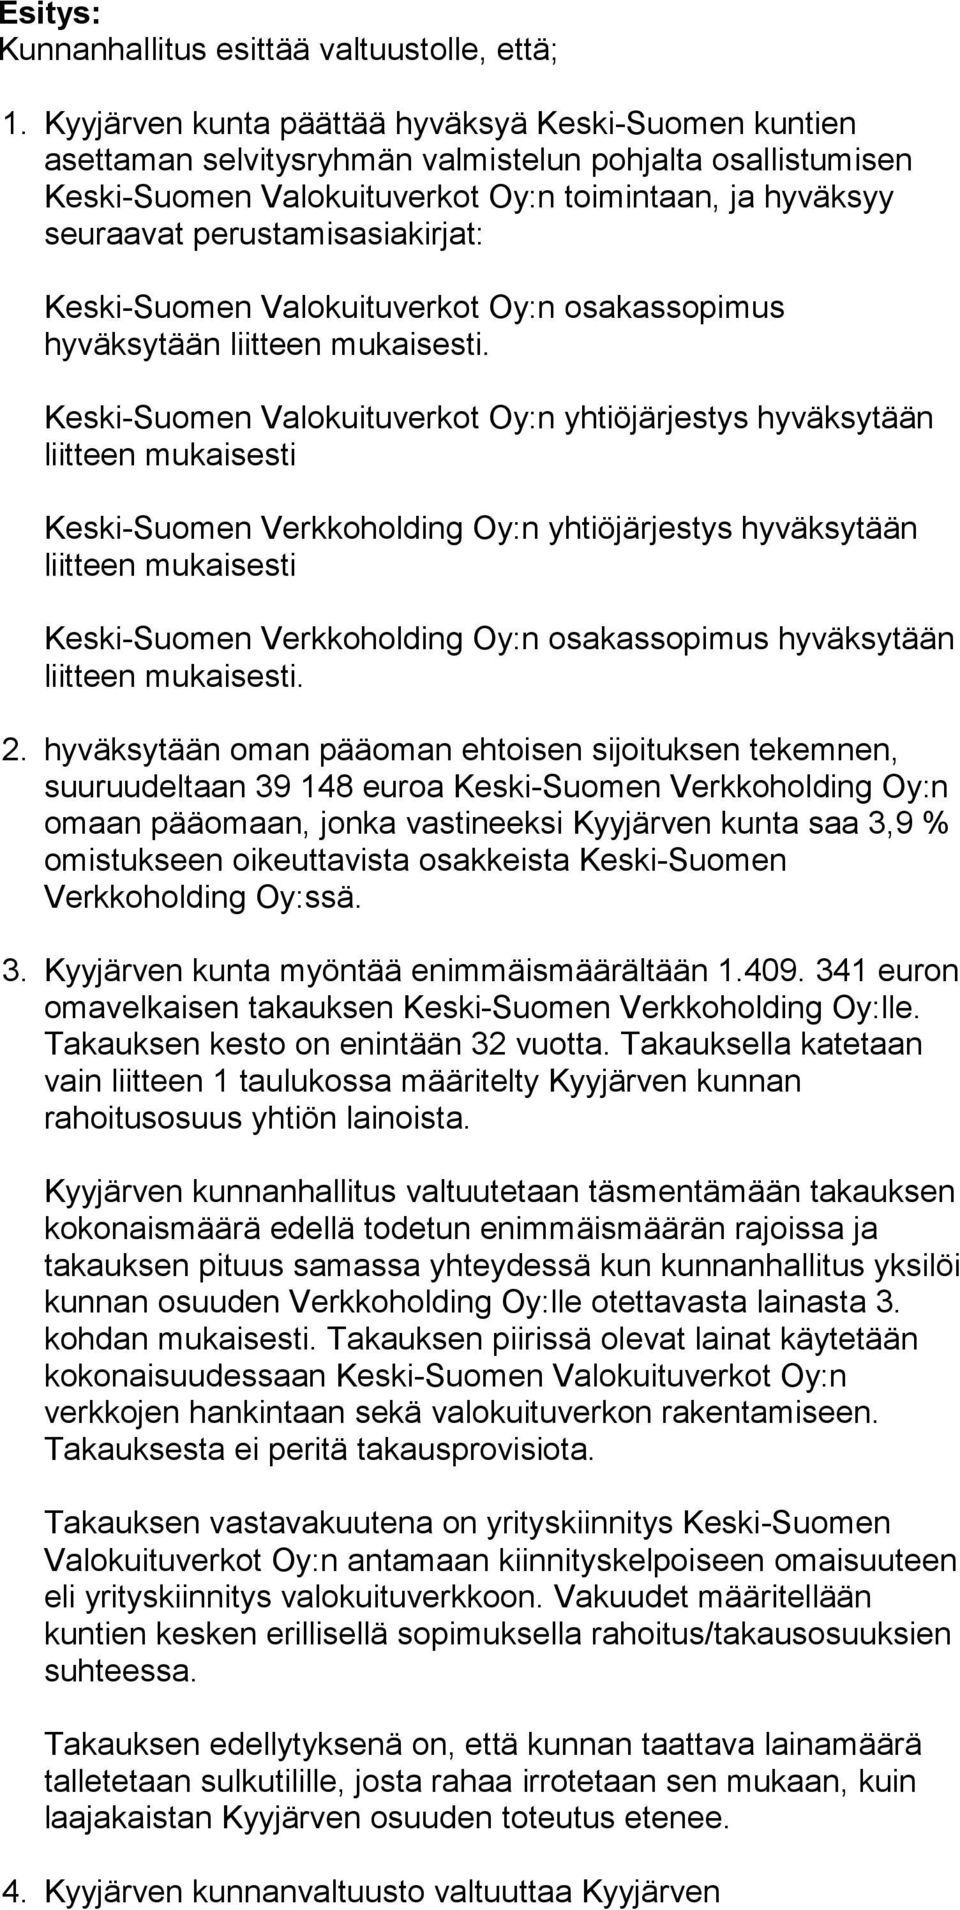 perustamisasiakirjat: Keski-Suomen Valokuituverkot Oy:n osakassopimus hyväksytään liitteen mukaisesti.